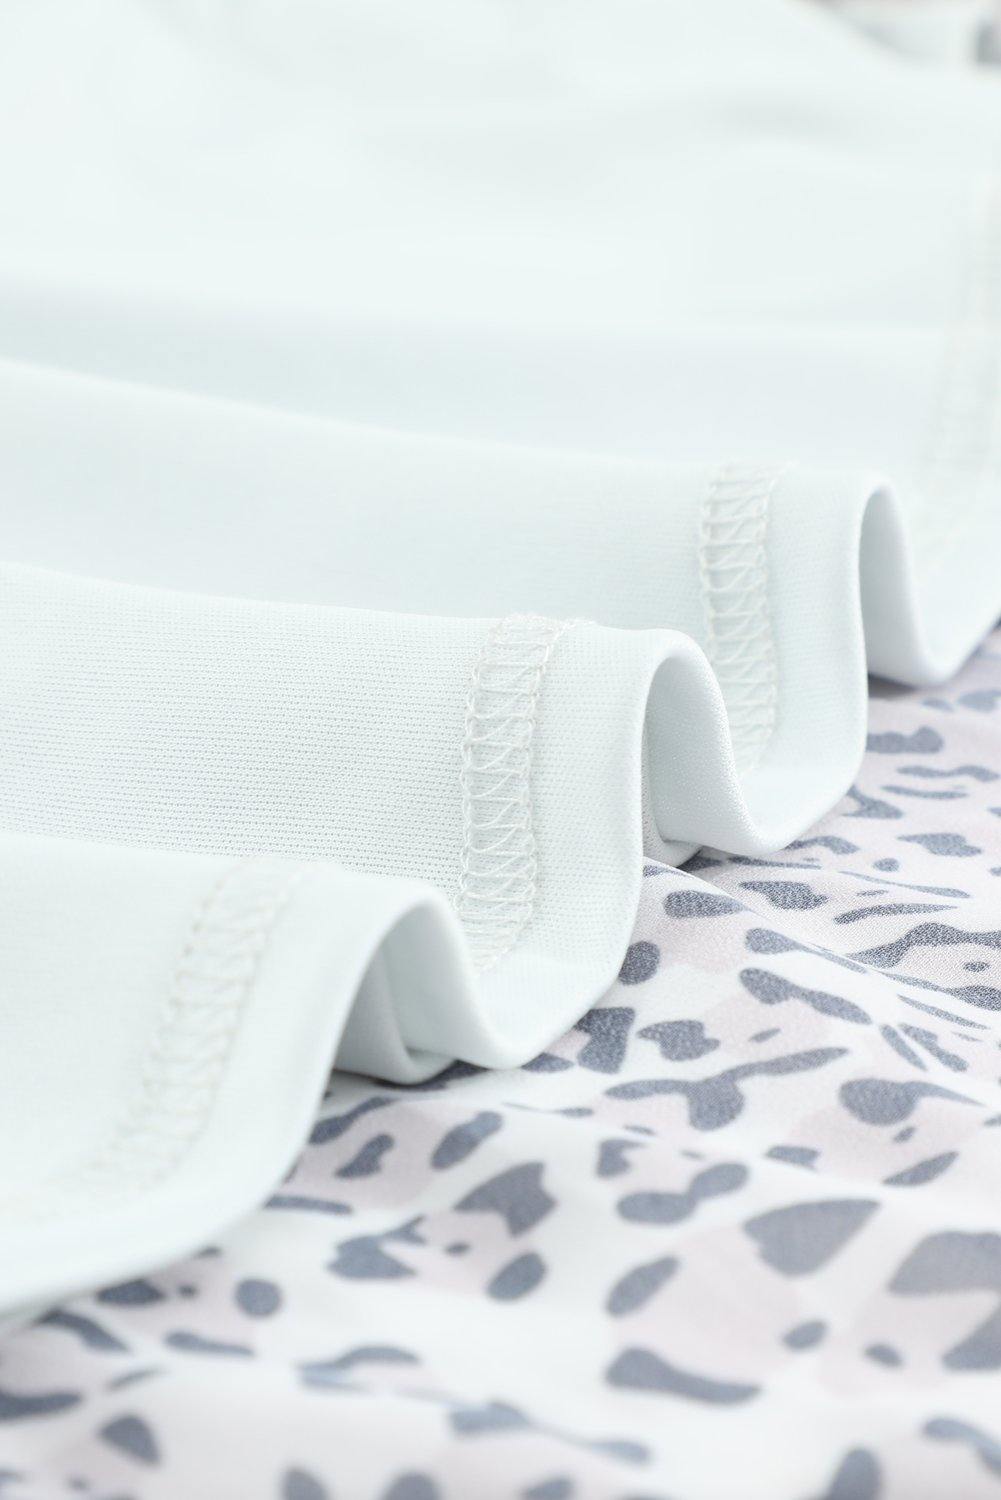 Leopard Buttoned Tie Waist Ruffle Puff Sleeve Mini Dress - L & M Kee, LLC